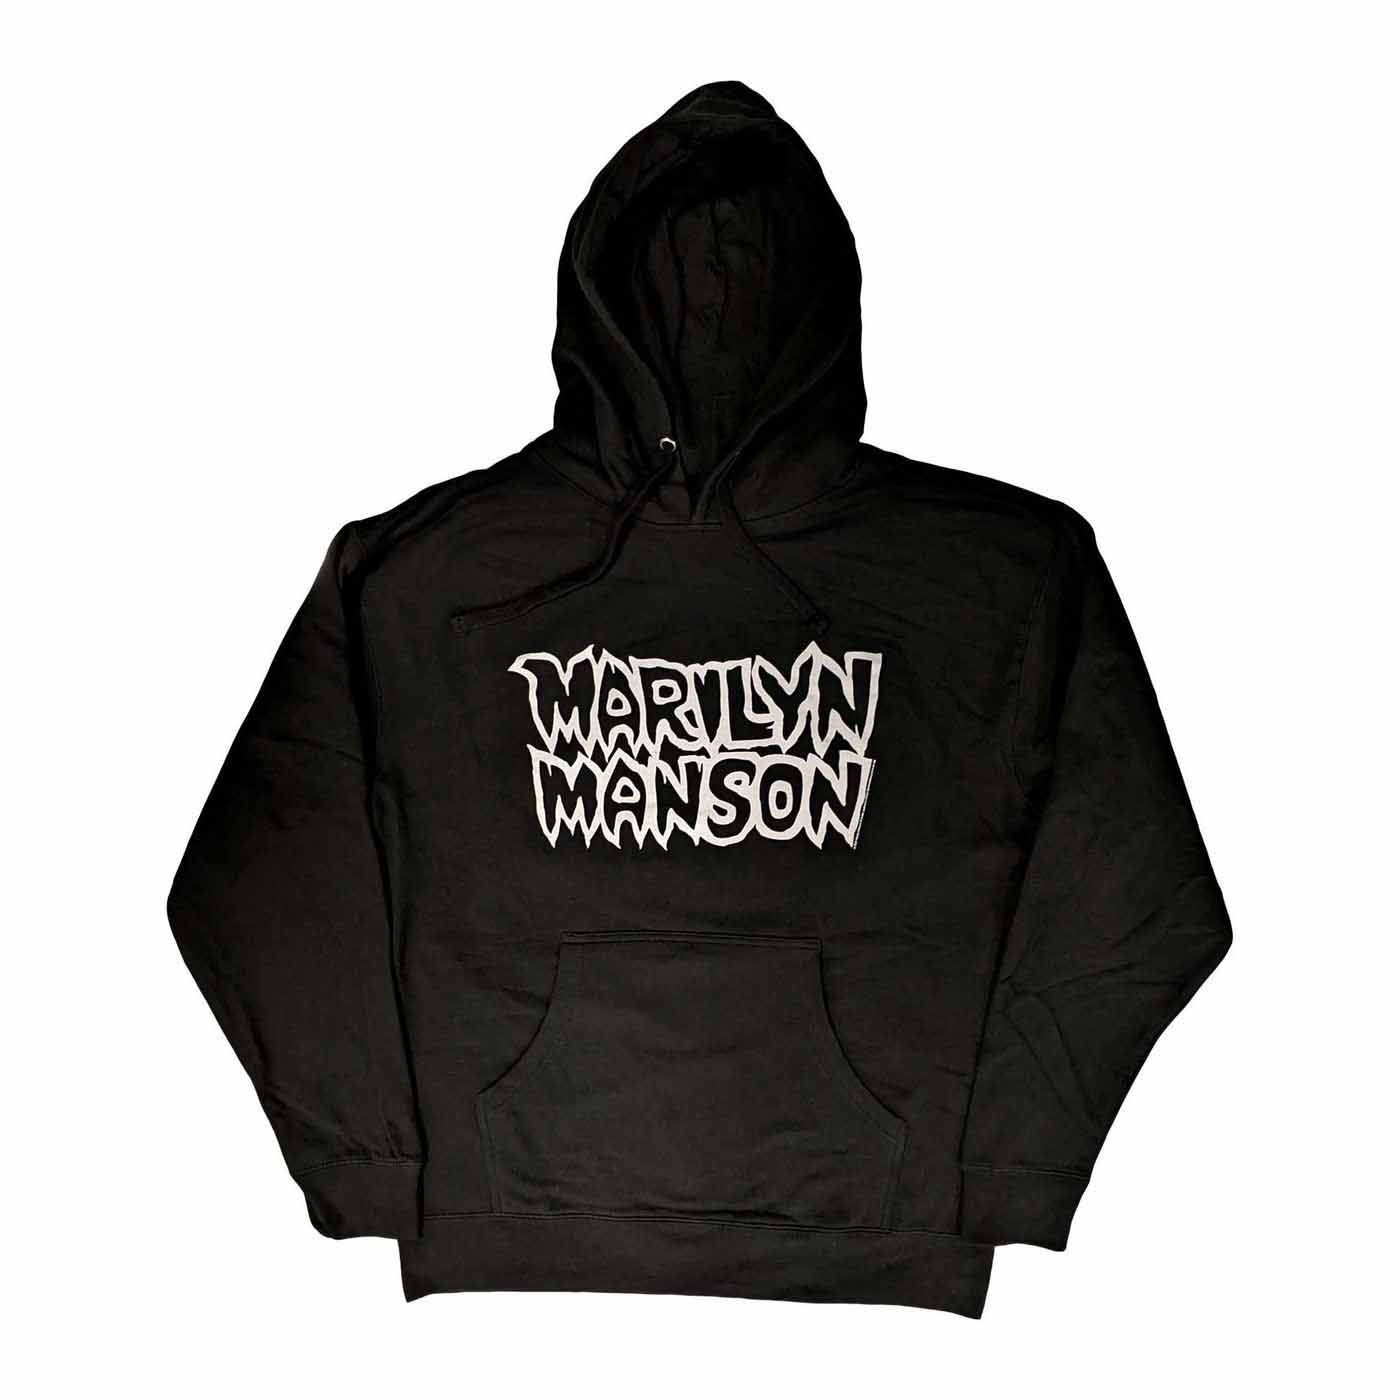 Marilyn Manson プルオーバーパーカー マリリン・マンソン Classic 